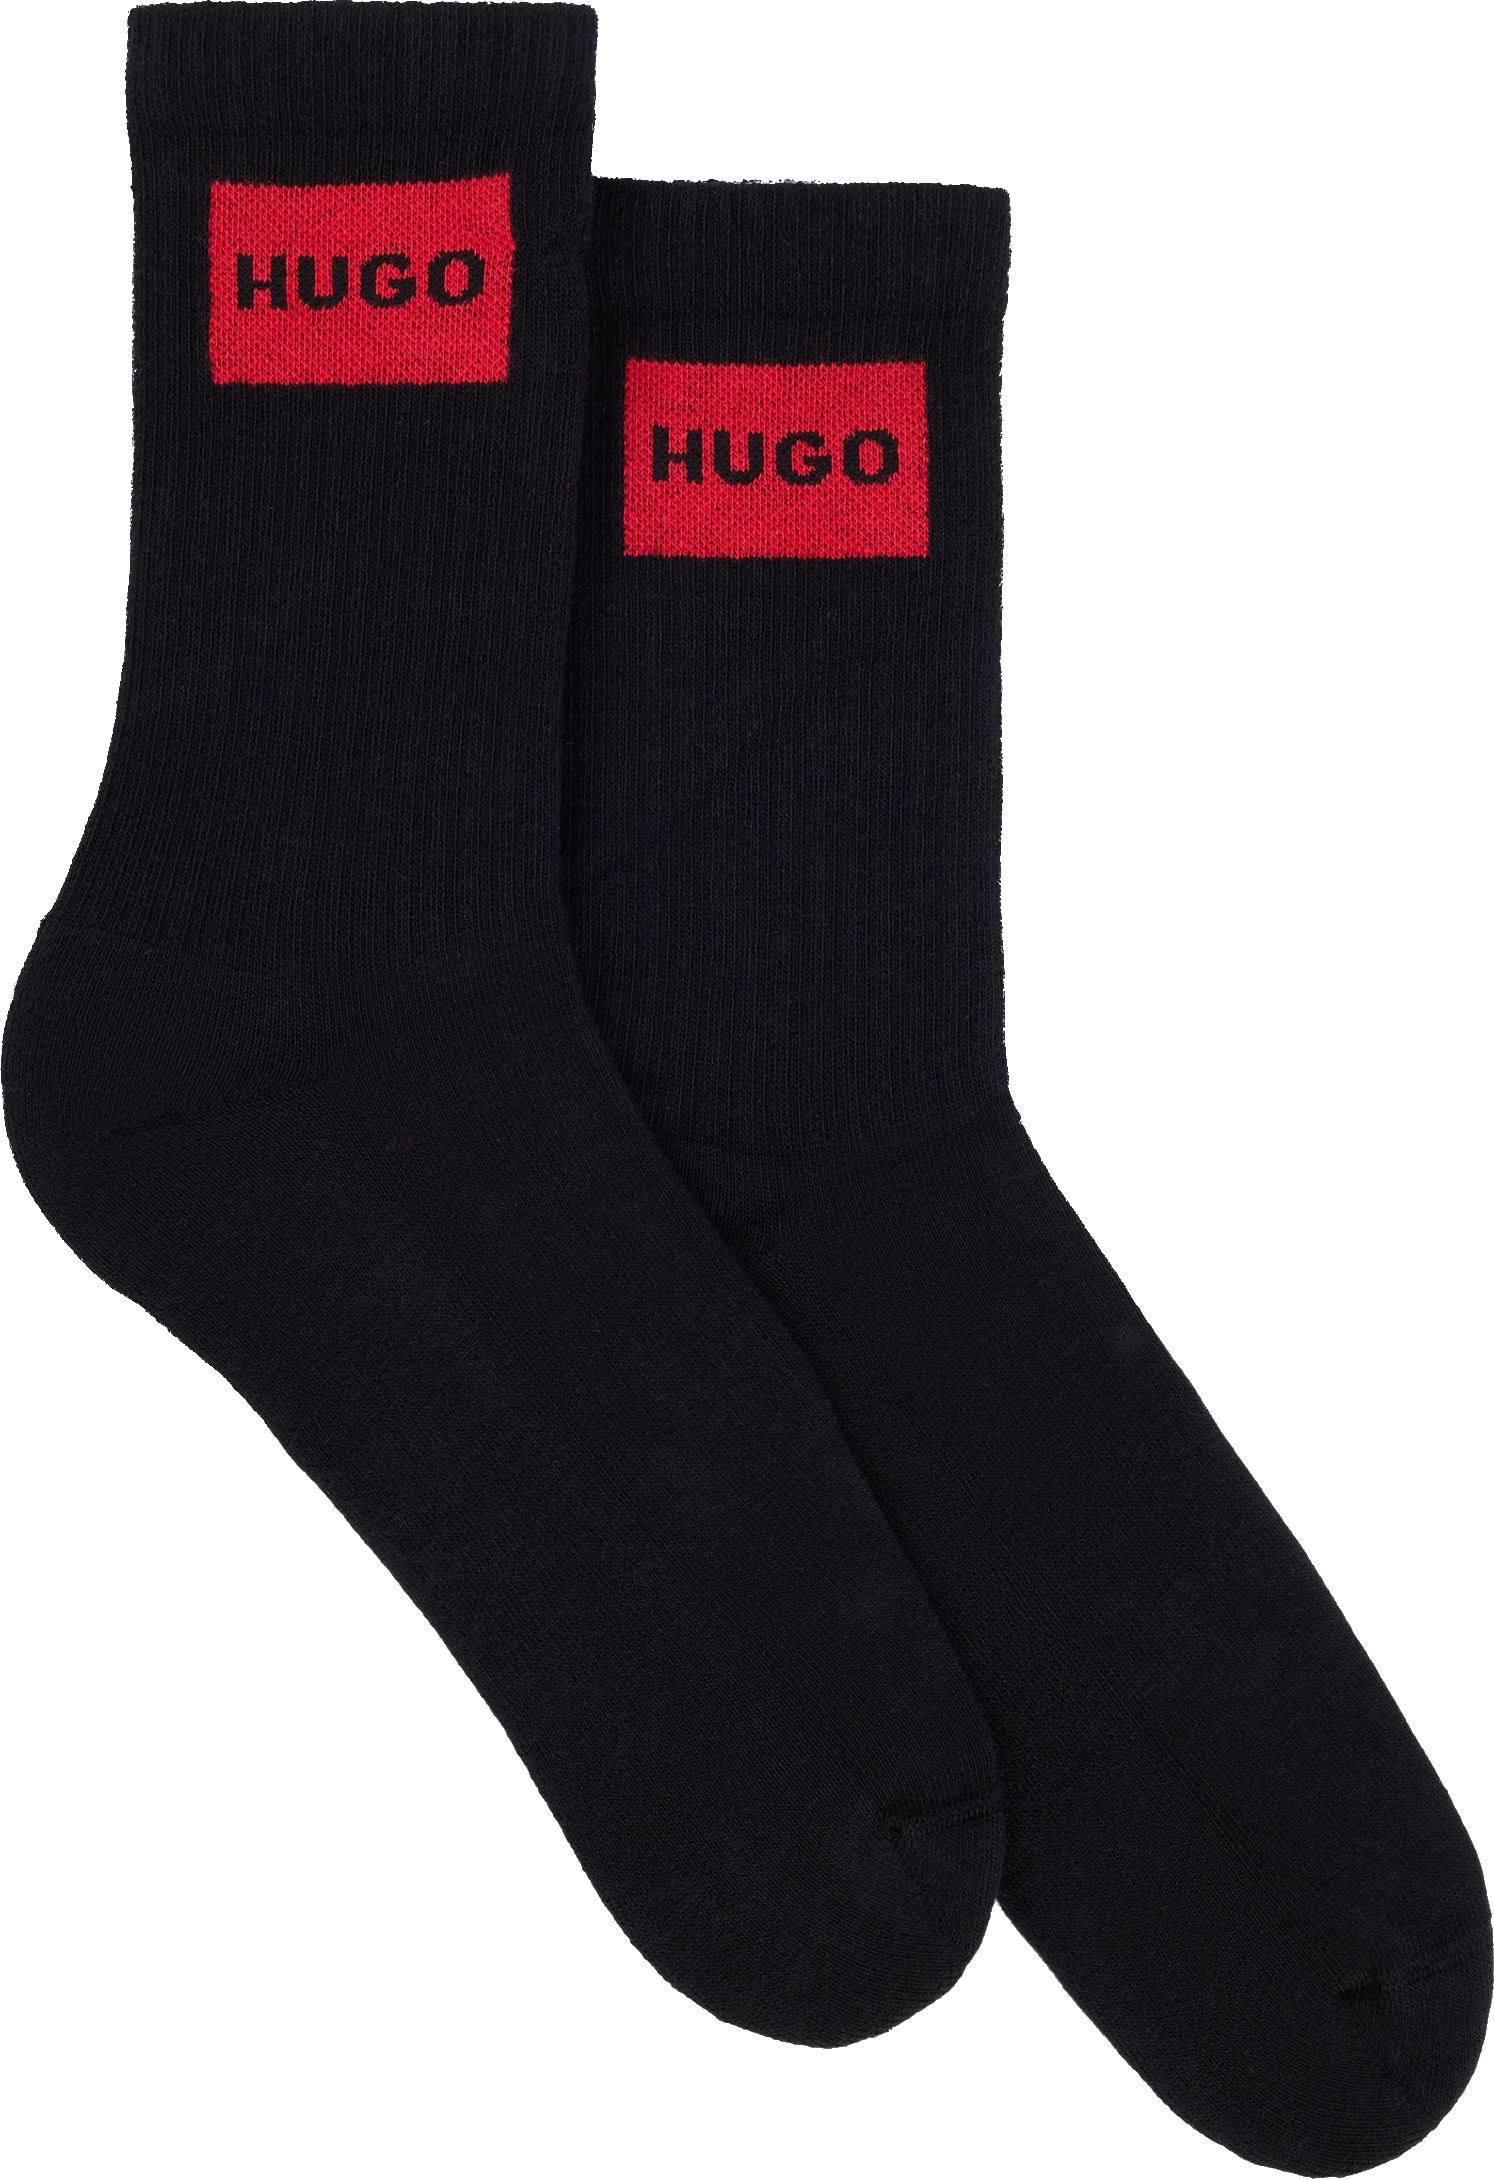 Hugo Boss 2 PACK - pánské ponožky HUGO 50510640-001 43-46